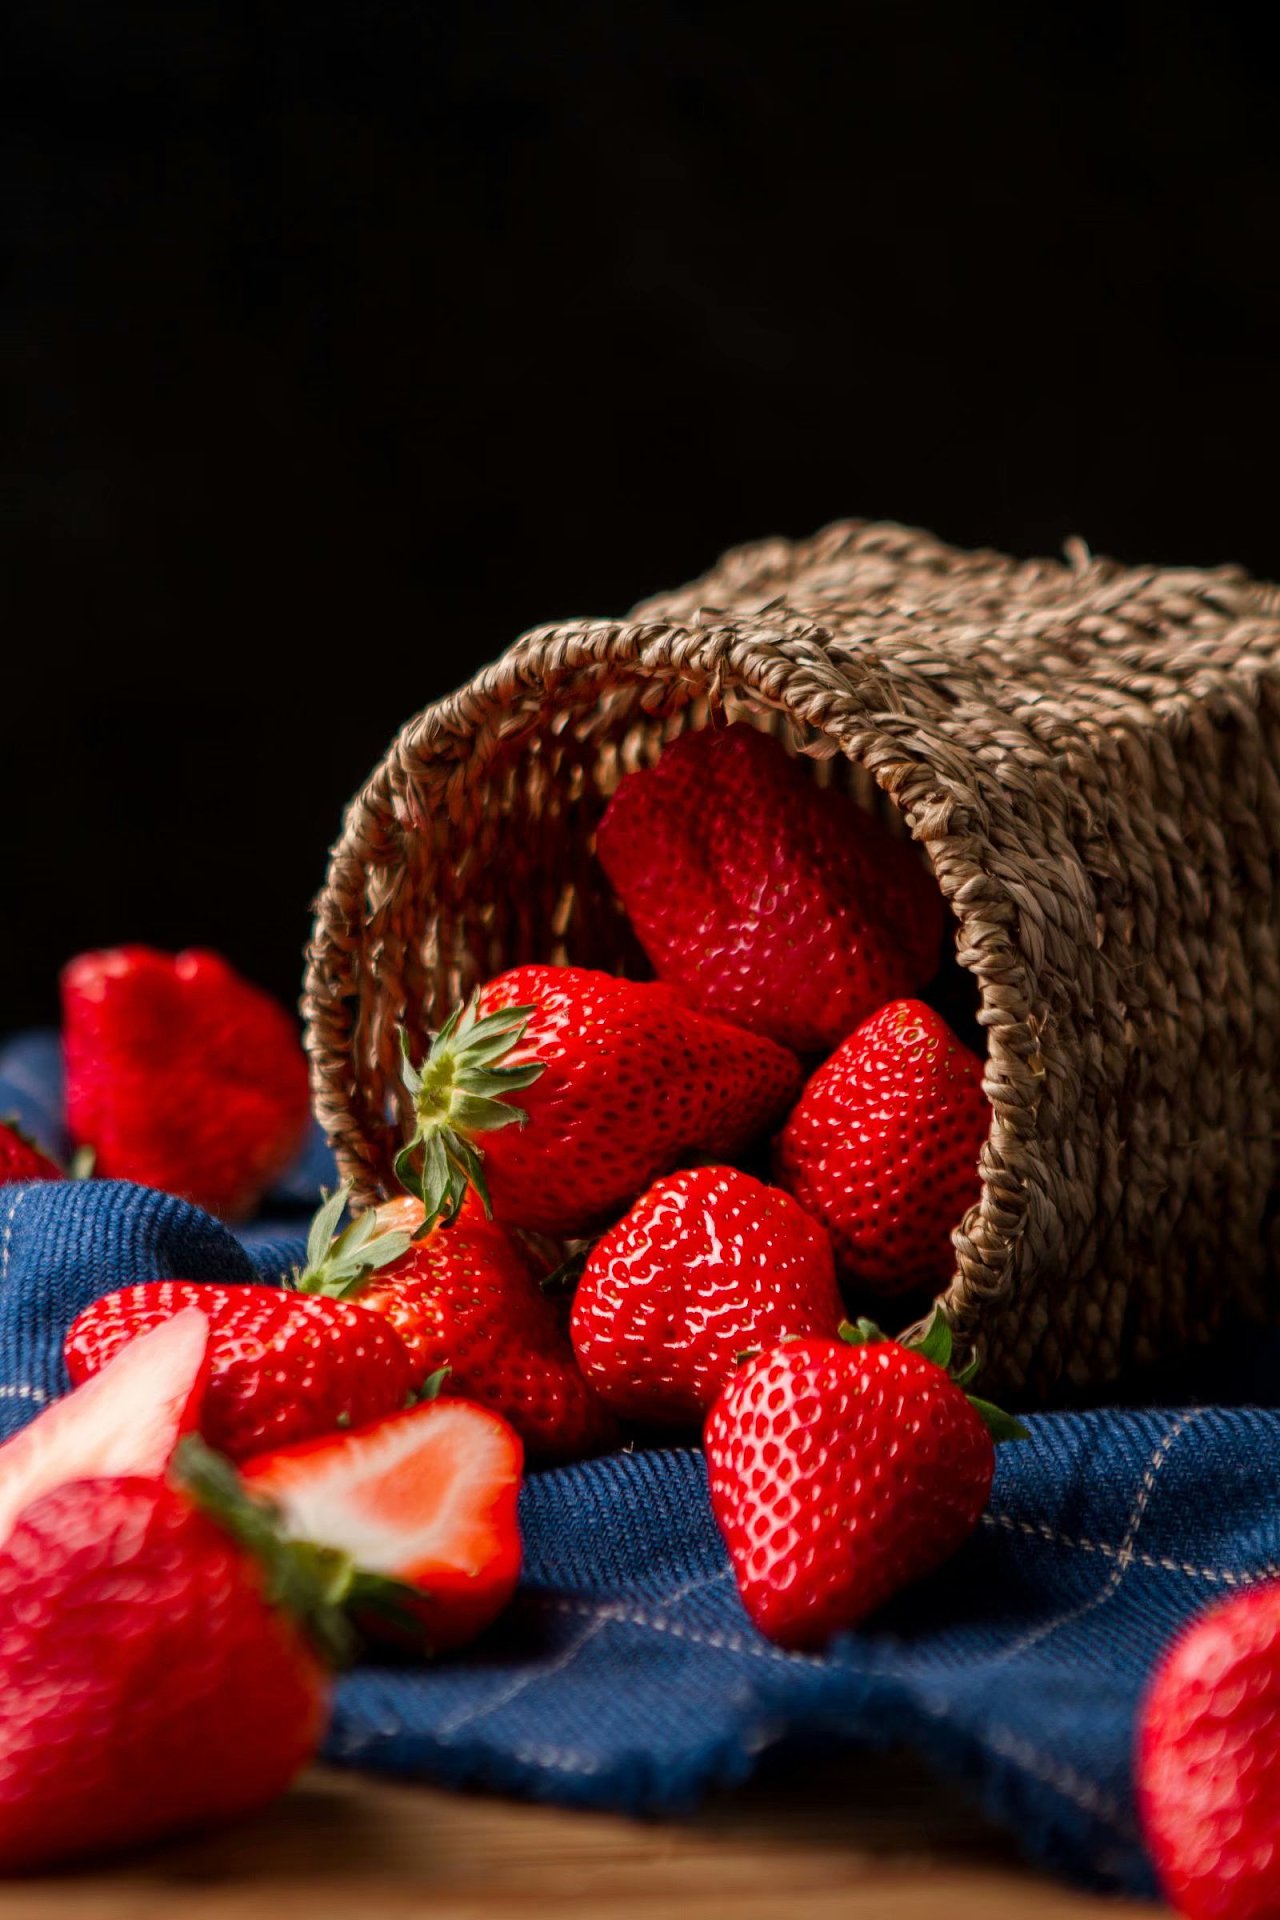 图片素材 : 厂, 水果, 甜, 花瓣, 成熟, 餐饮, 红, 生产, 美味的, 花园草莓 3728x2486 - - 1101492 ...